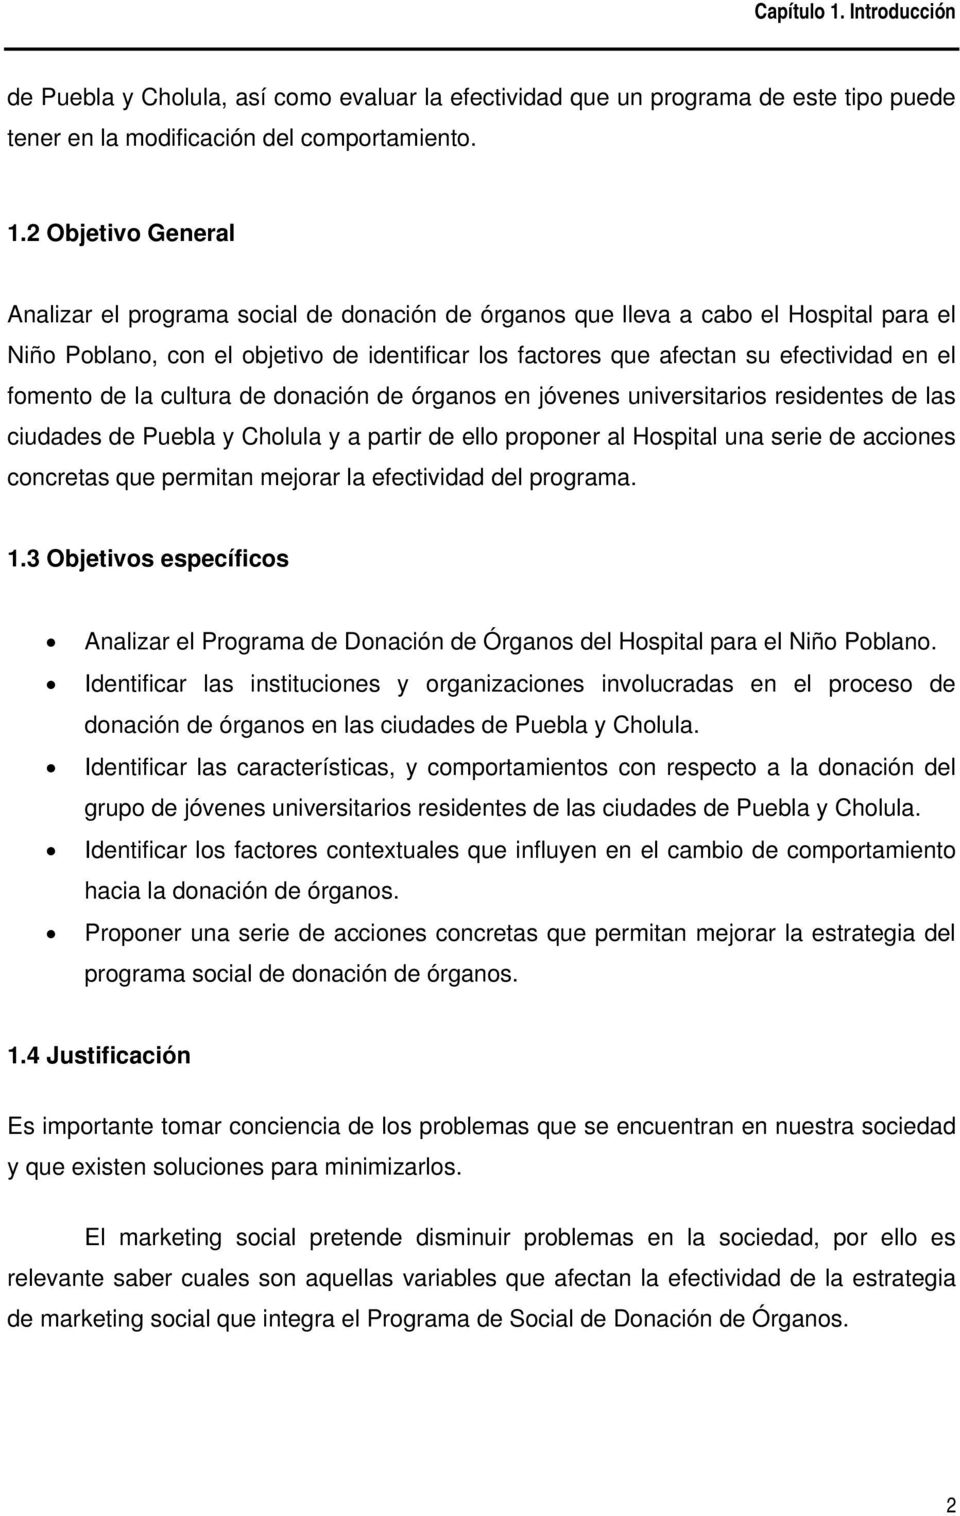 fomento de la cultura de donación de órganos en jóvenes universitarios residentes de las ciudades de Puebla y Cholula y a partir de ello proponer al Hospital una serie de acciones concretas que